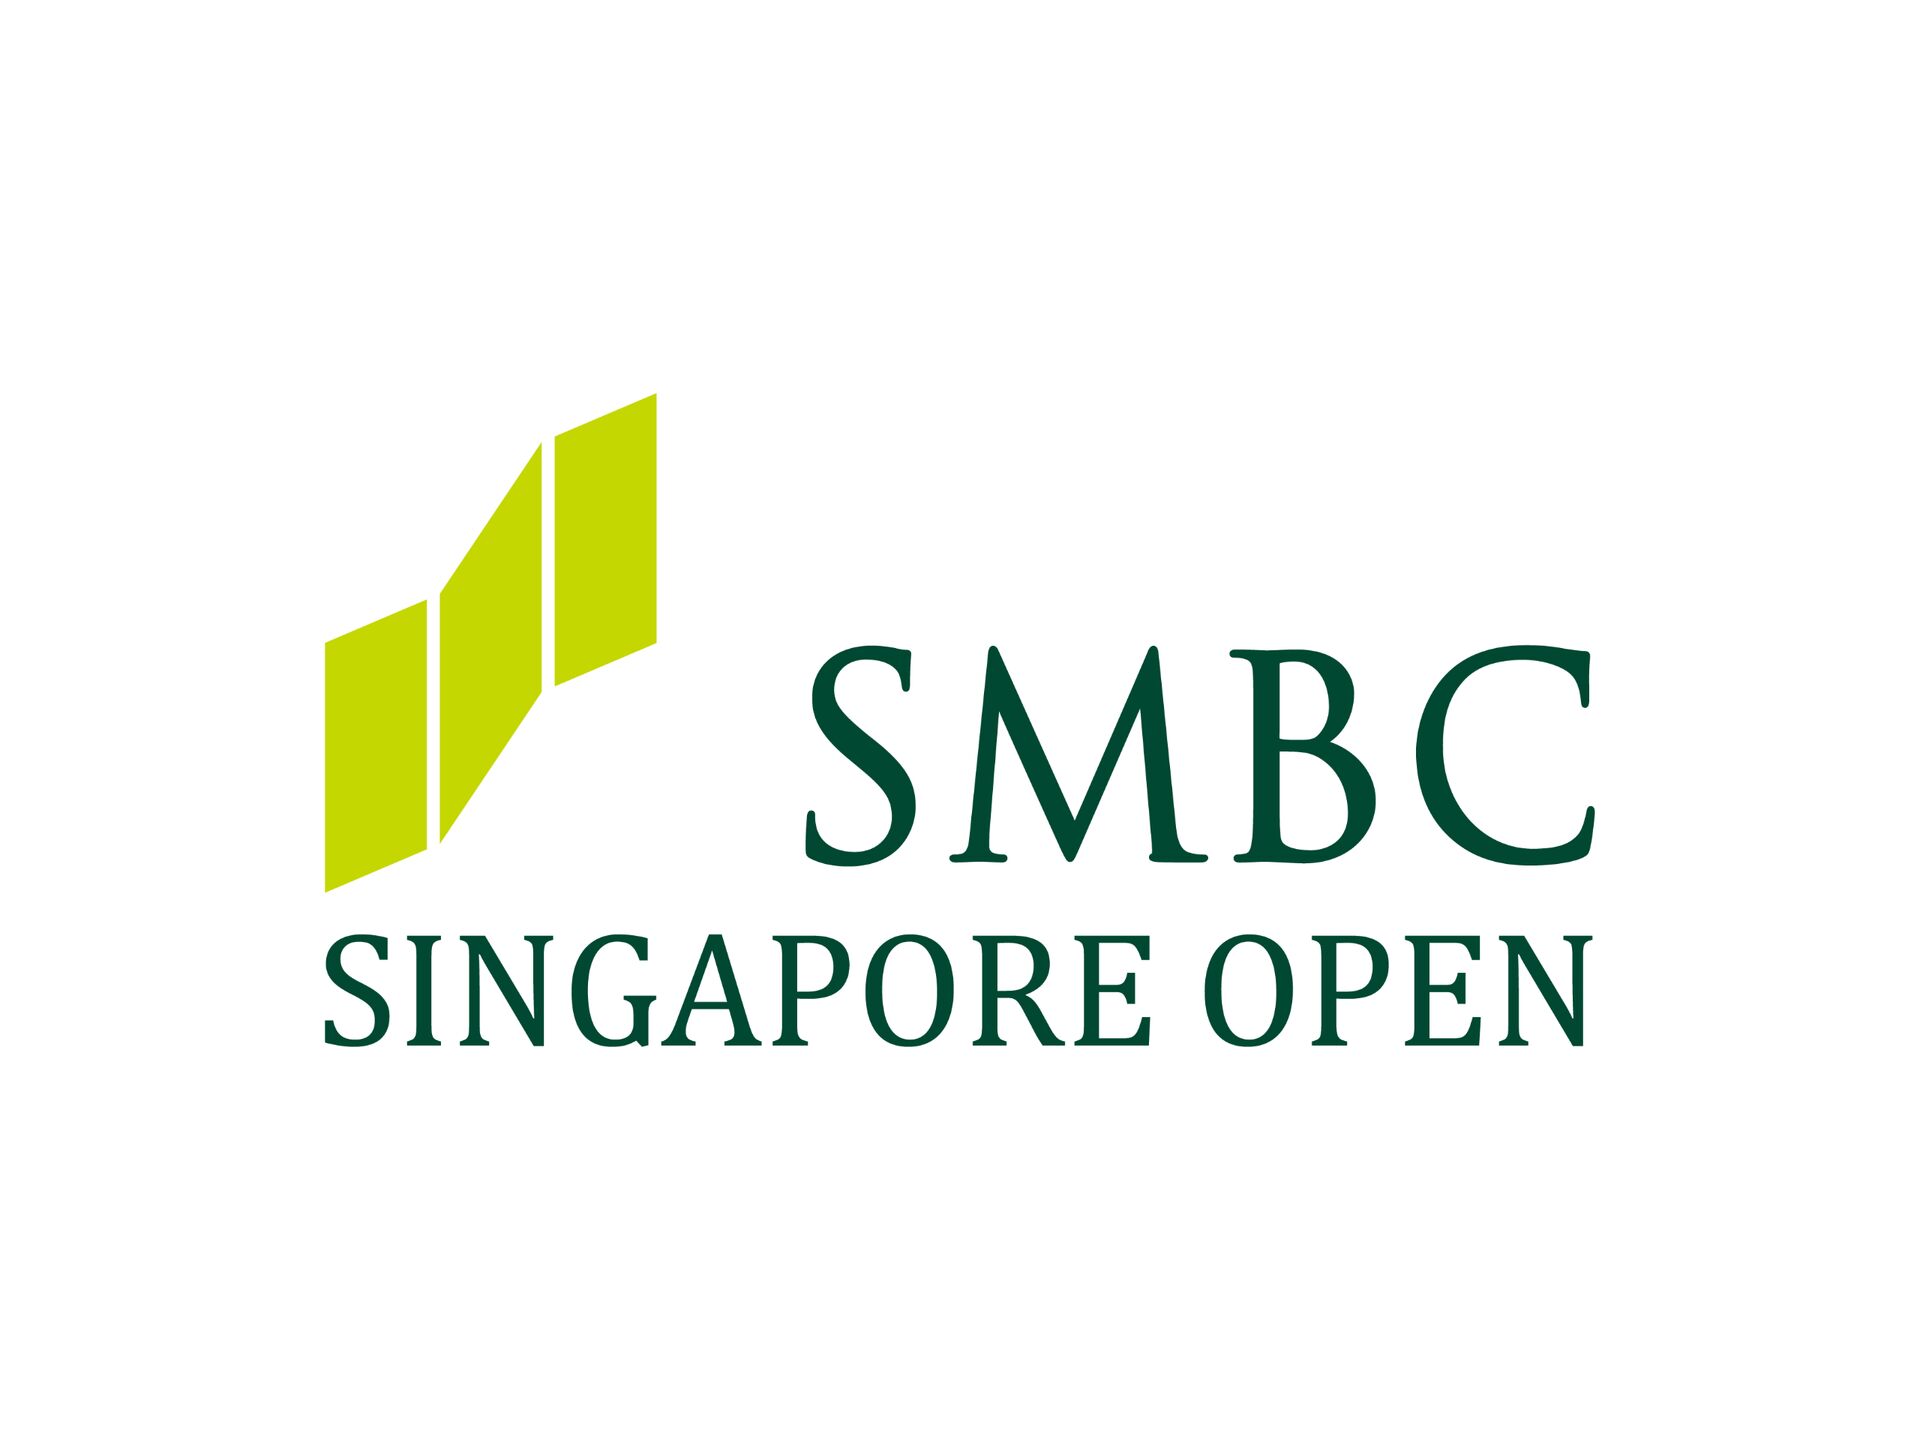 「SMBCシンガポールオープン」の開催概要変更のお知らせ